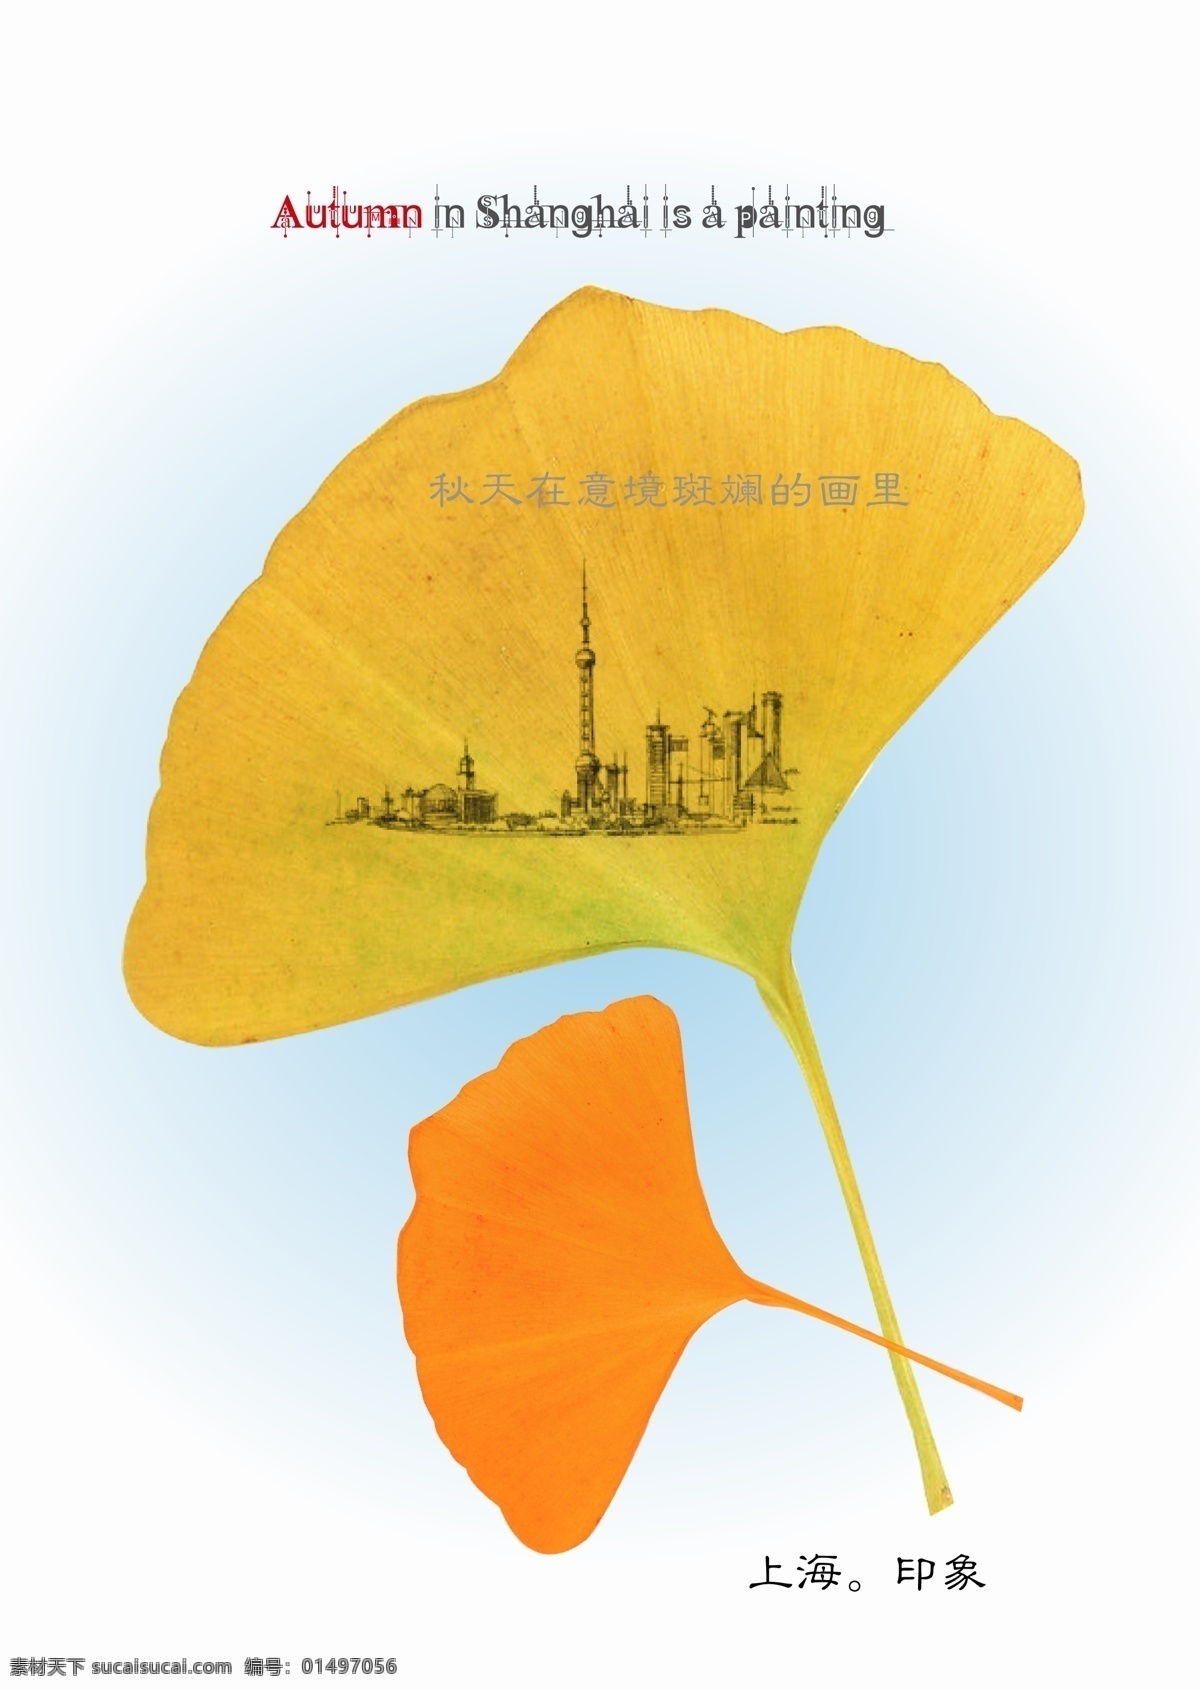 上海城市印象 秋天 银杏叶 上海印象 淡蓝色背景 上海 副 画 矢量